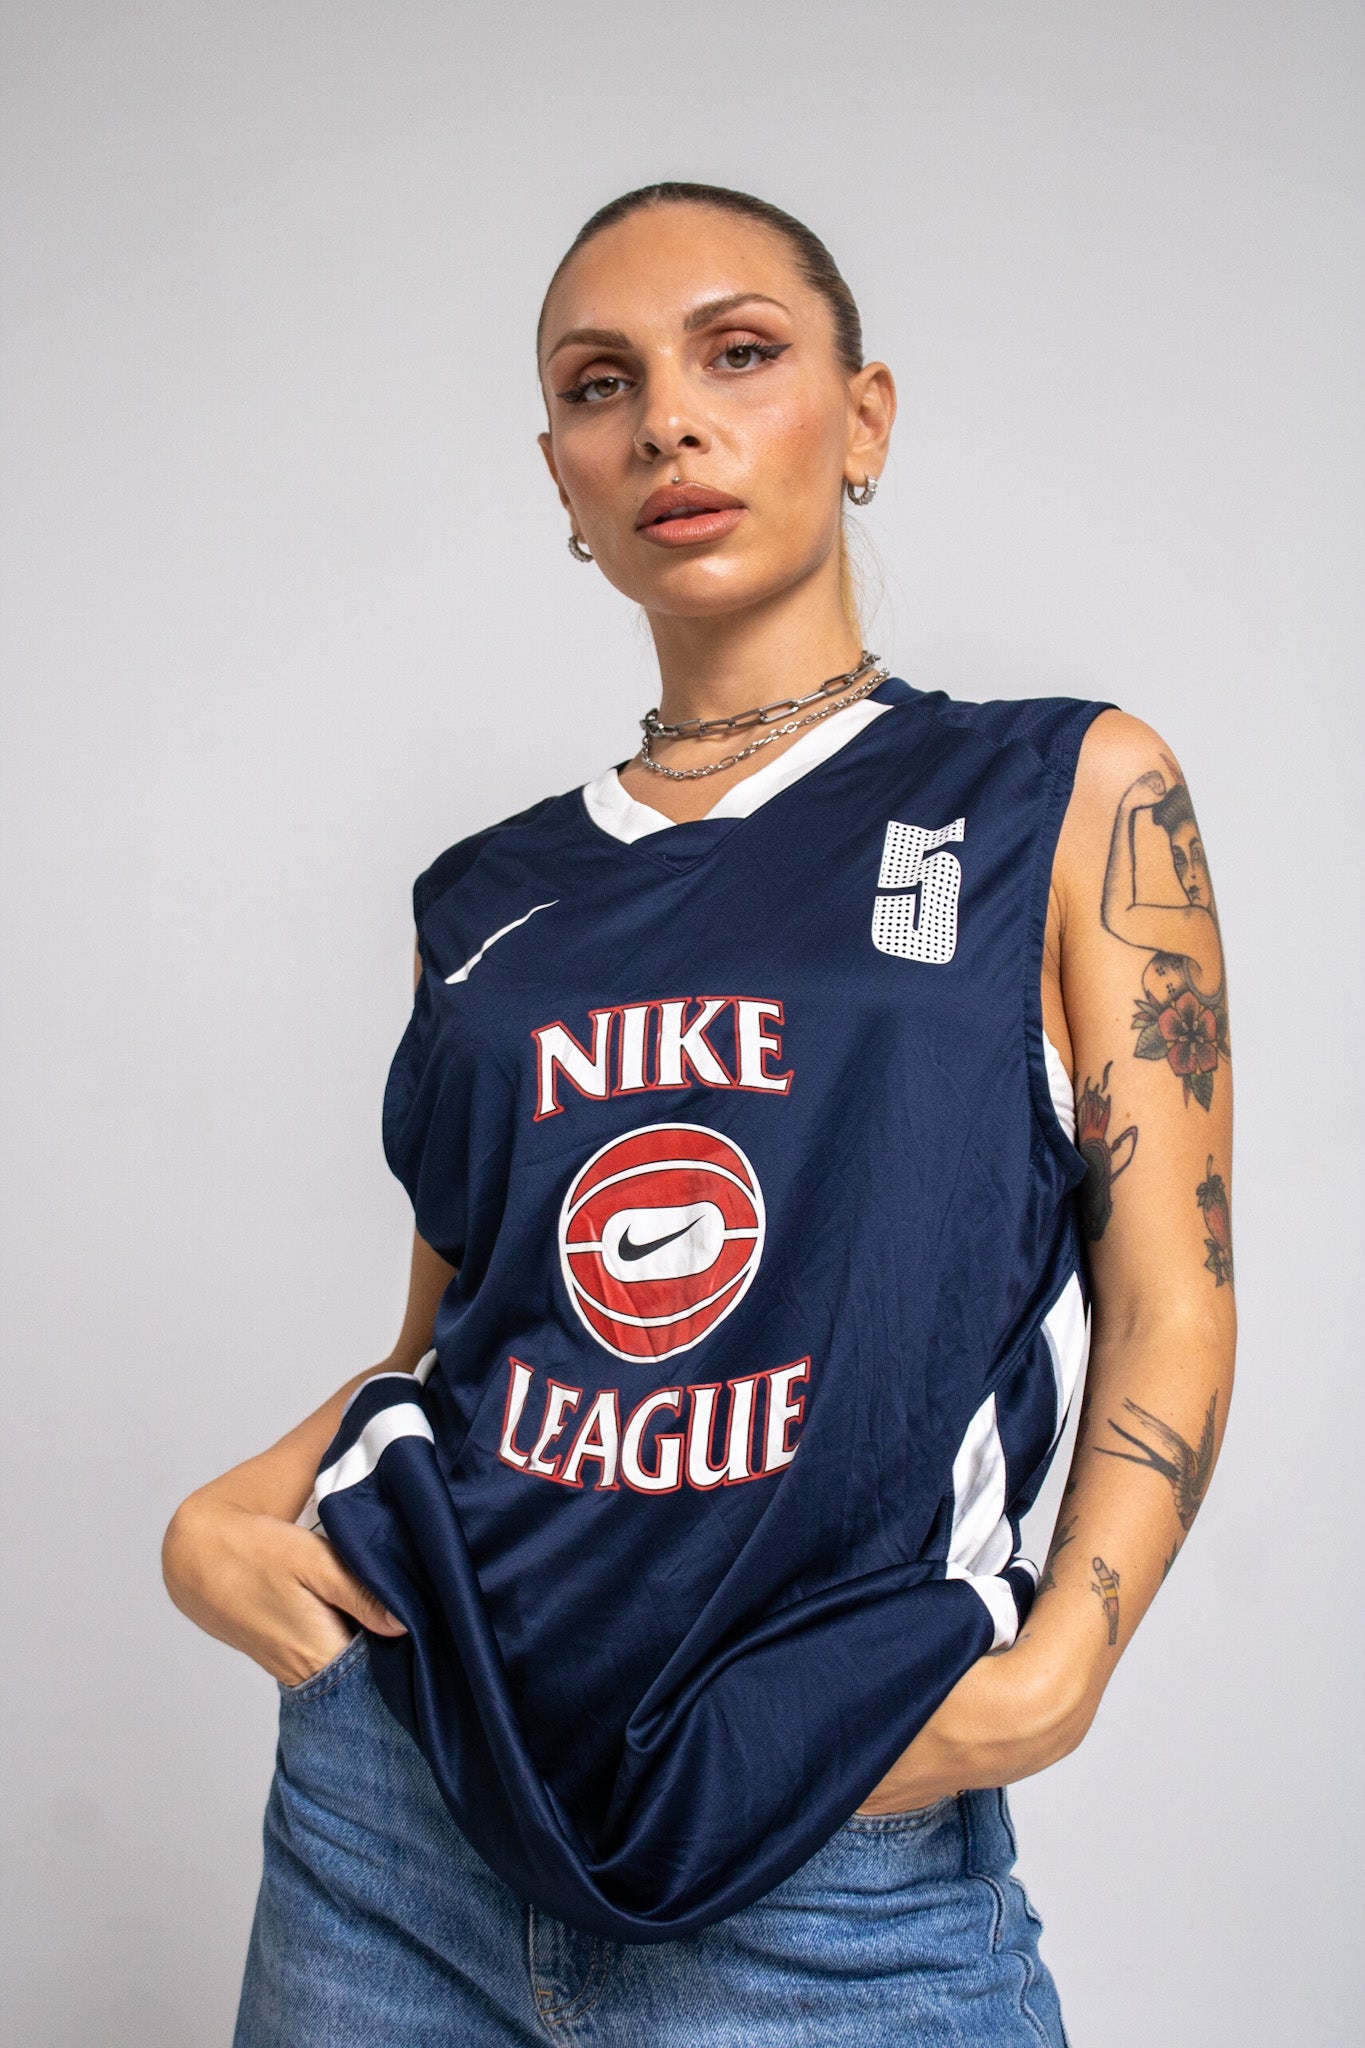 Nike Basketball Jersey